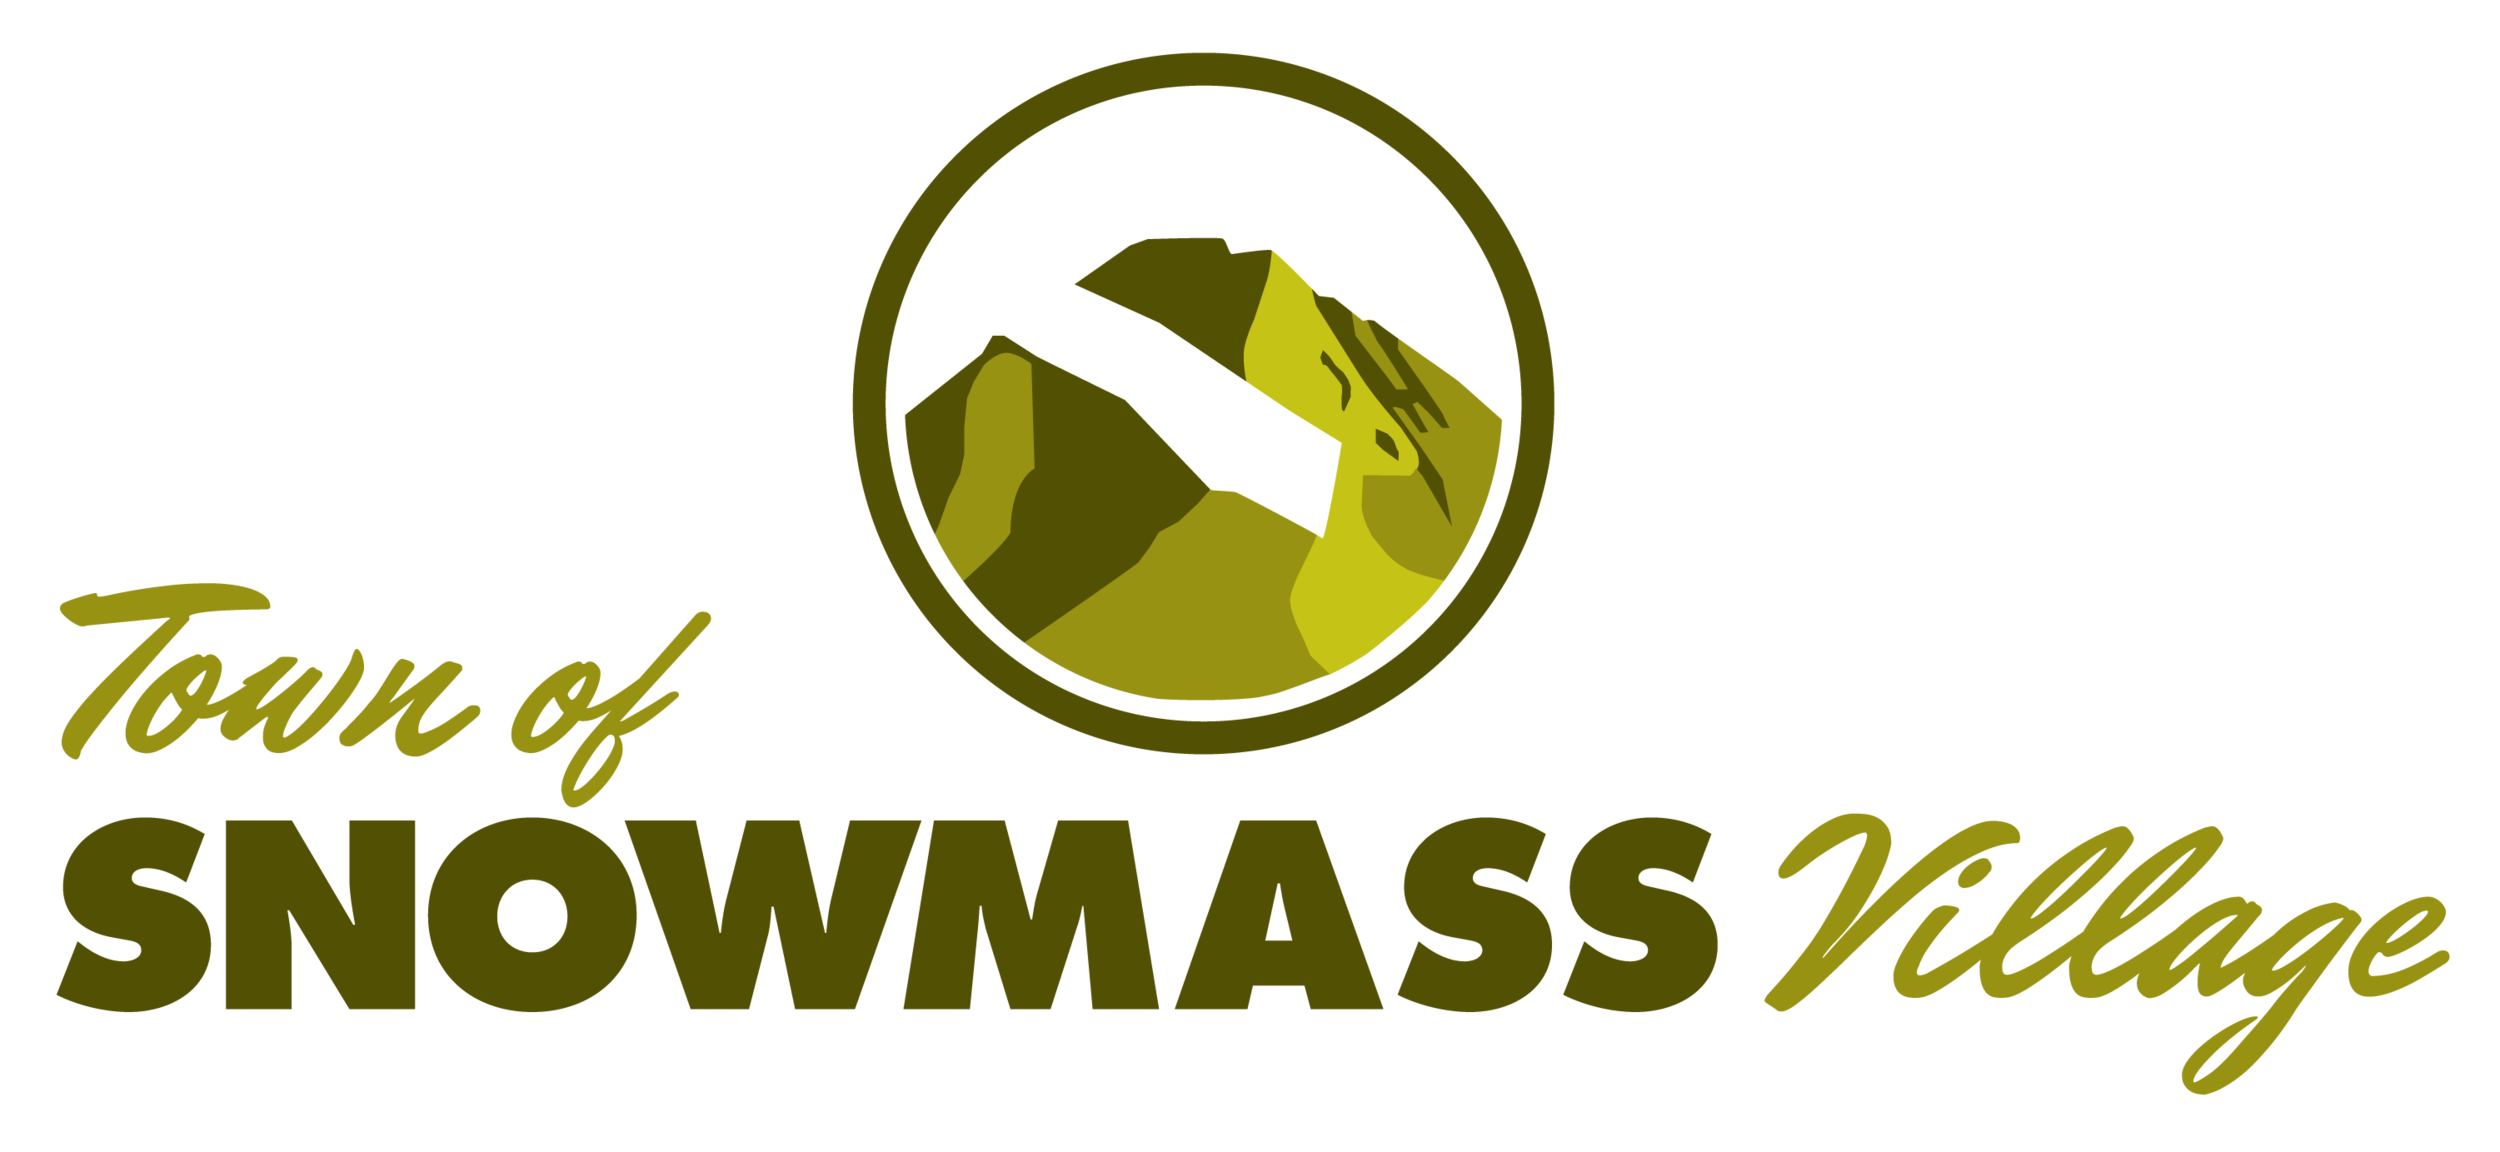 Snowmass Logo.png